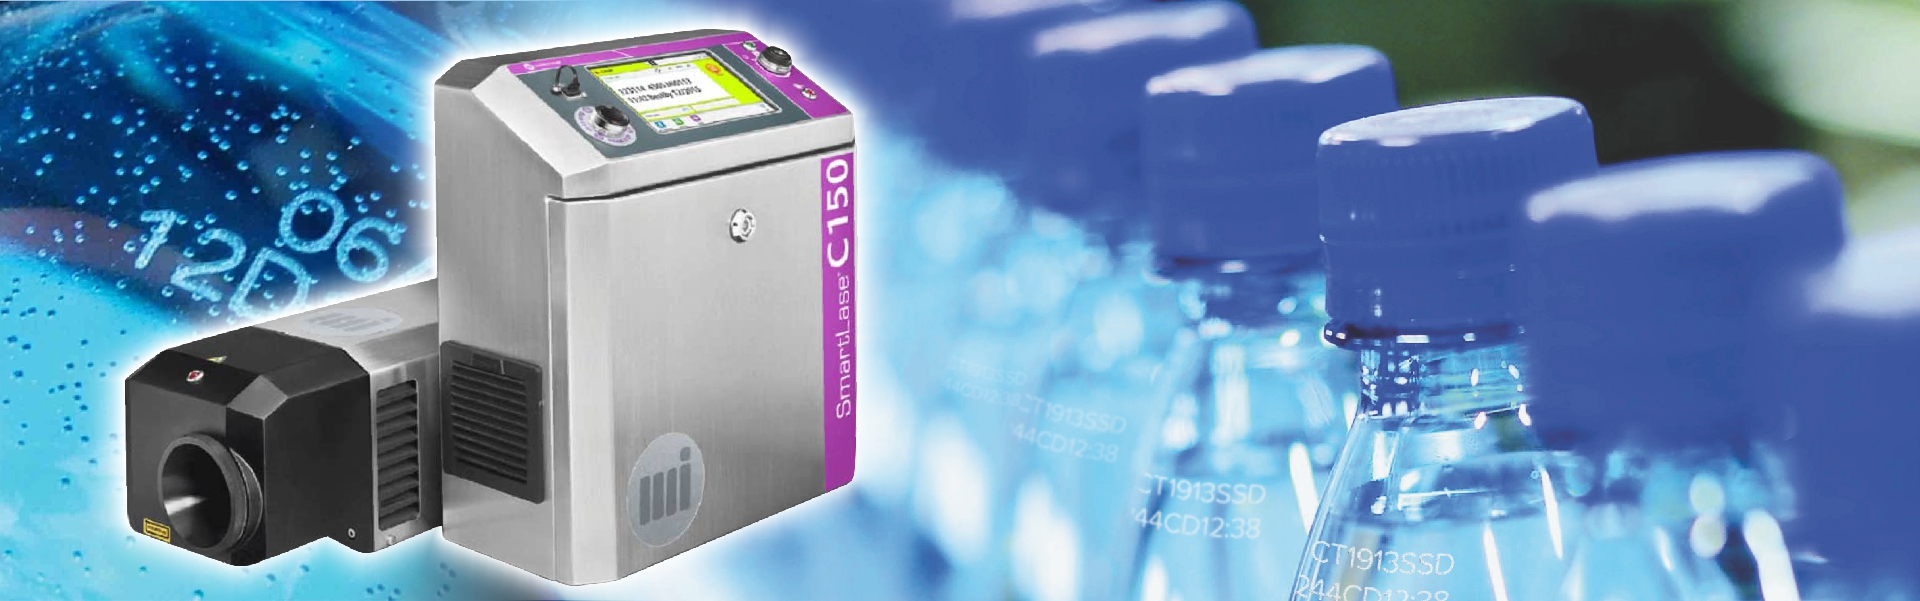 Установка и запуск лазерного маркиратора Markem-imaje 150 S на линии розлива прохладительных напитков